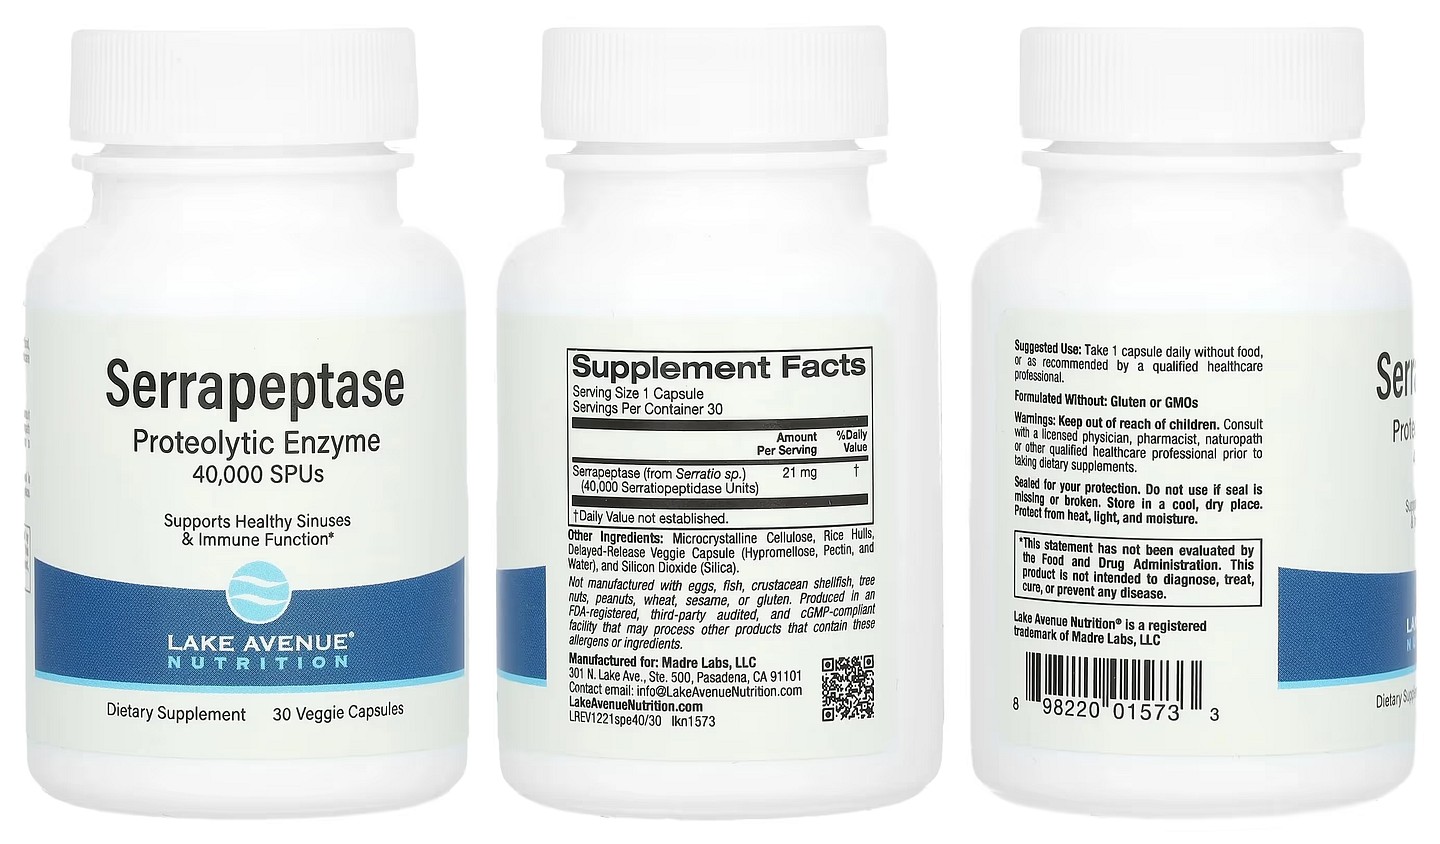 Lake Avenue Nutrition, Serrapeptase packaging